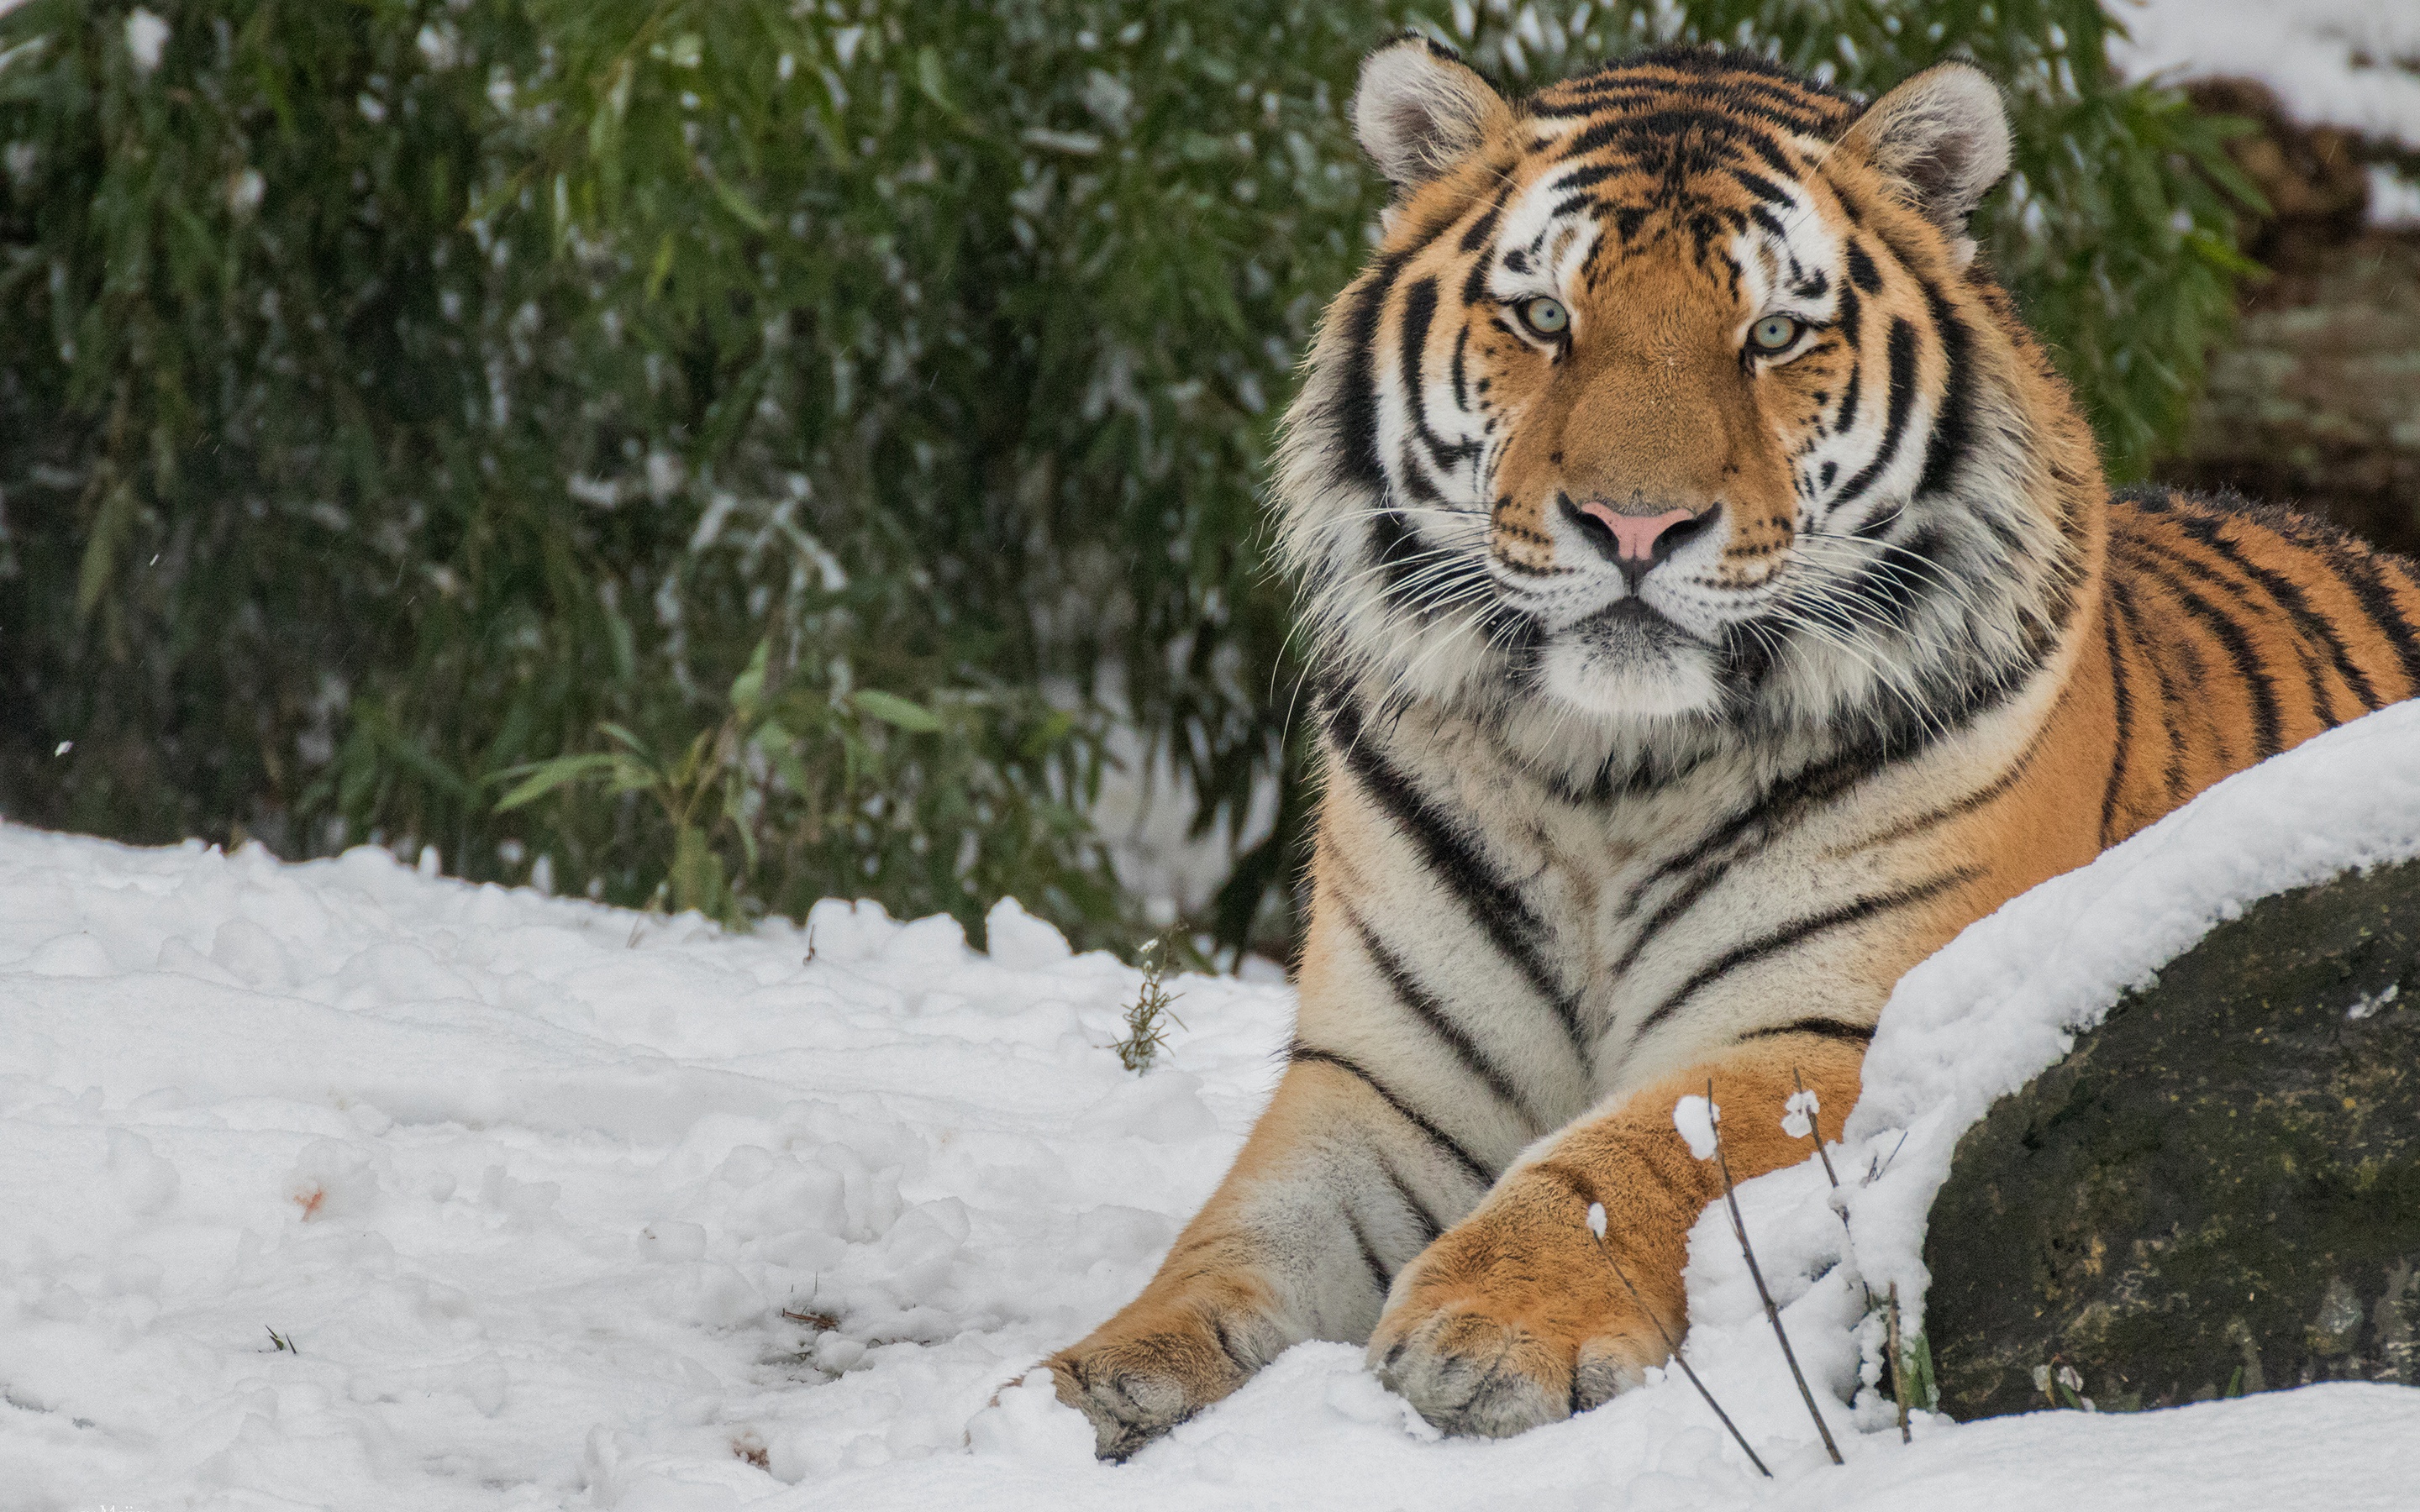 Скачать обои бесплатно Животные, Снег, Тигр, Кошки картинка на рабочий стол ПК